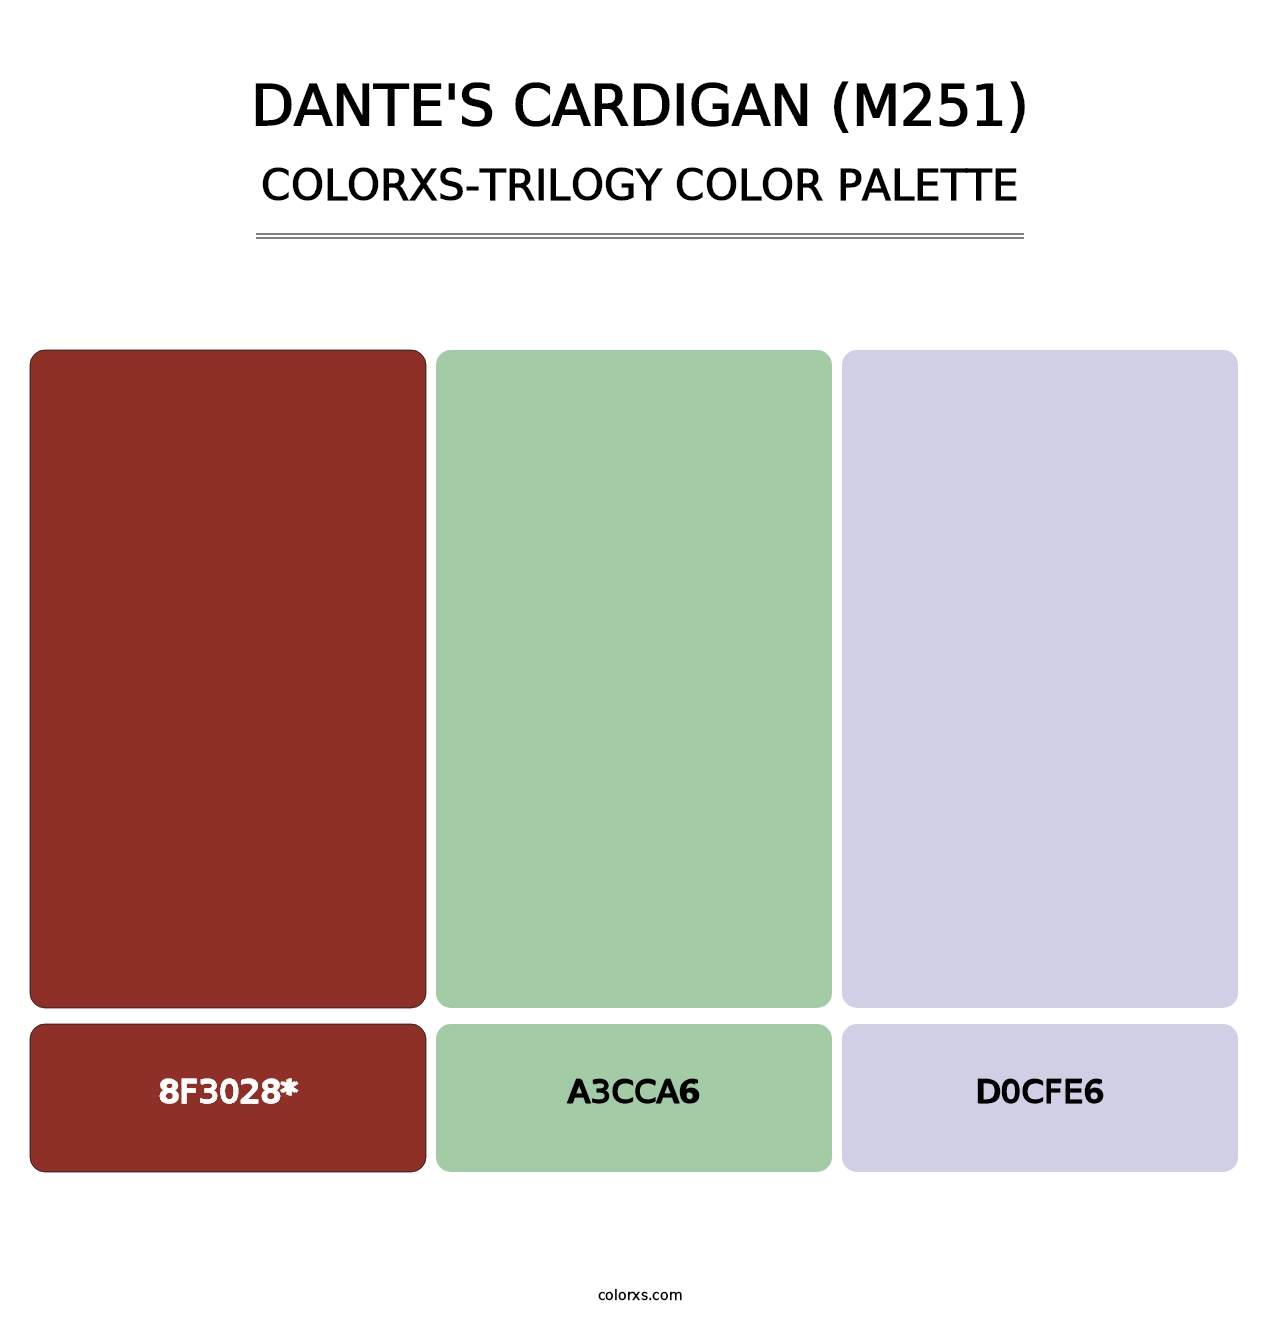 Dante's Cardigan (M251) - Colorxs Trilogy Palette